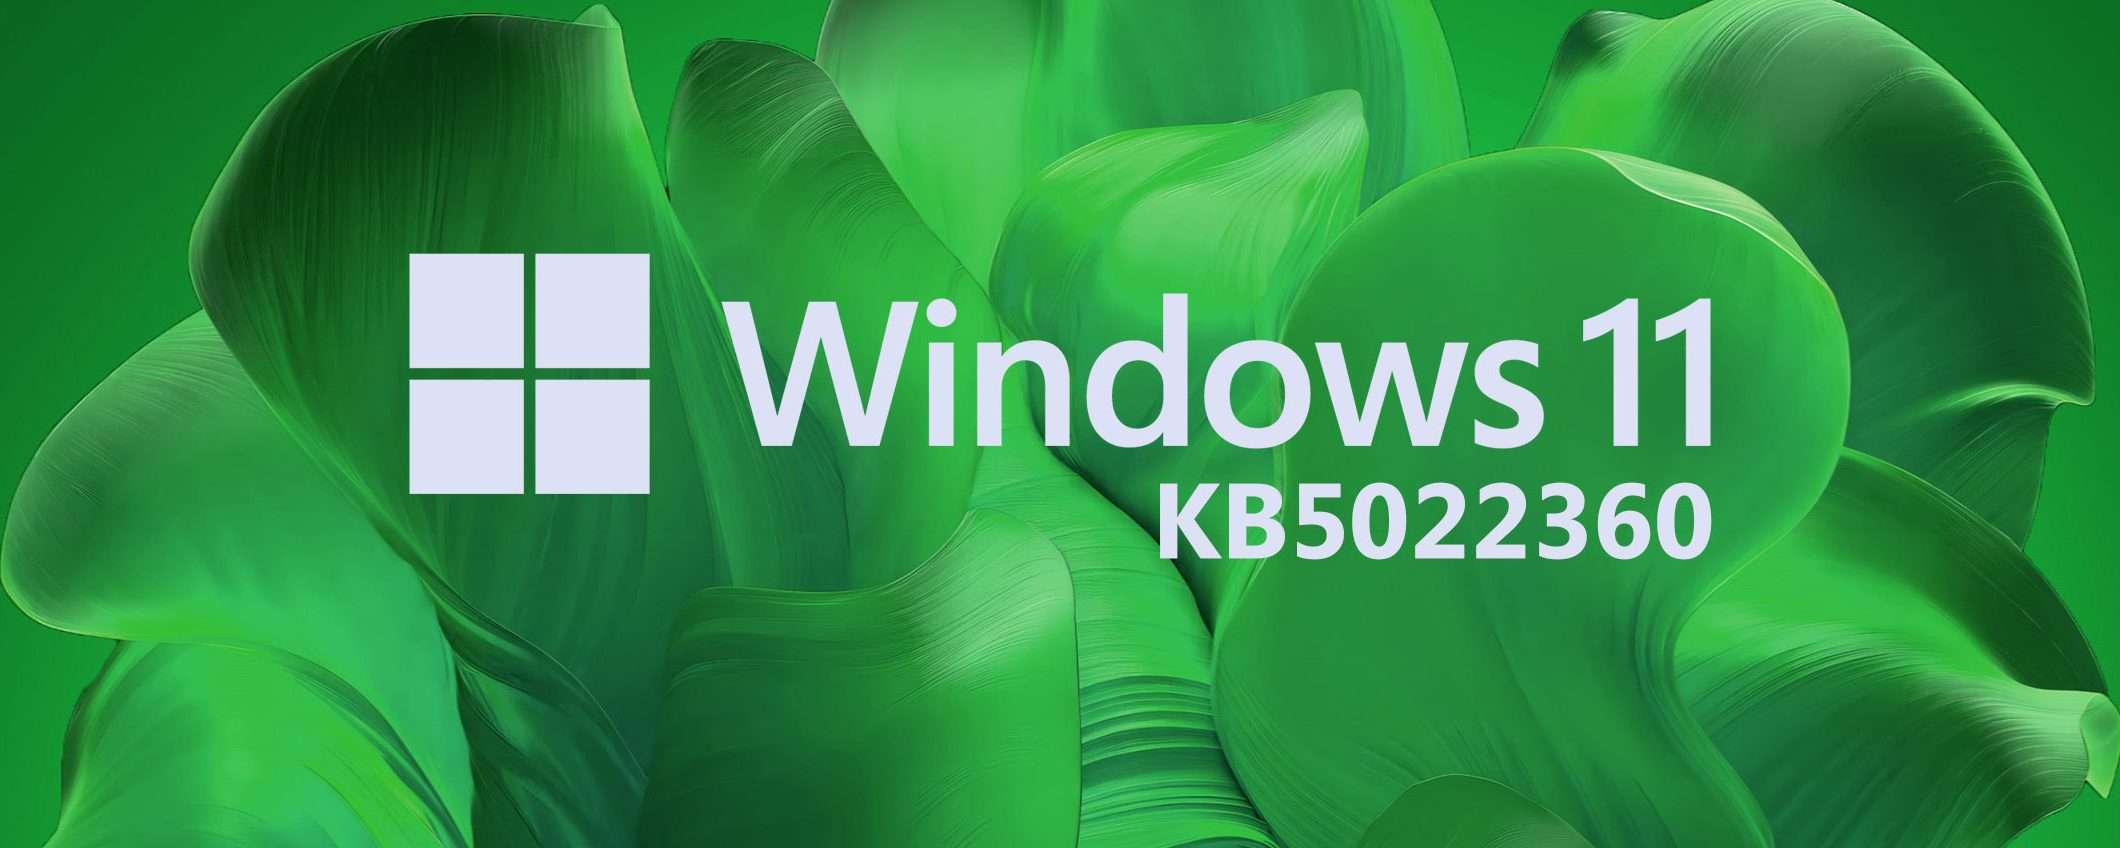 Windows 11, le novità dell'aggiornamento KB5522360